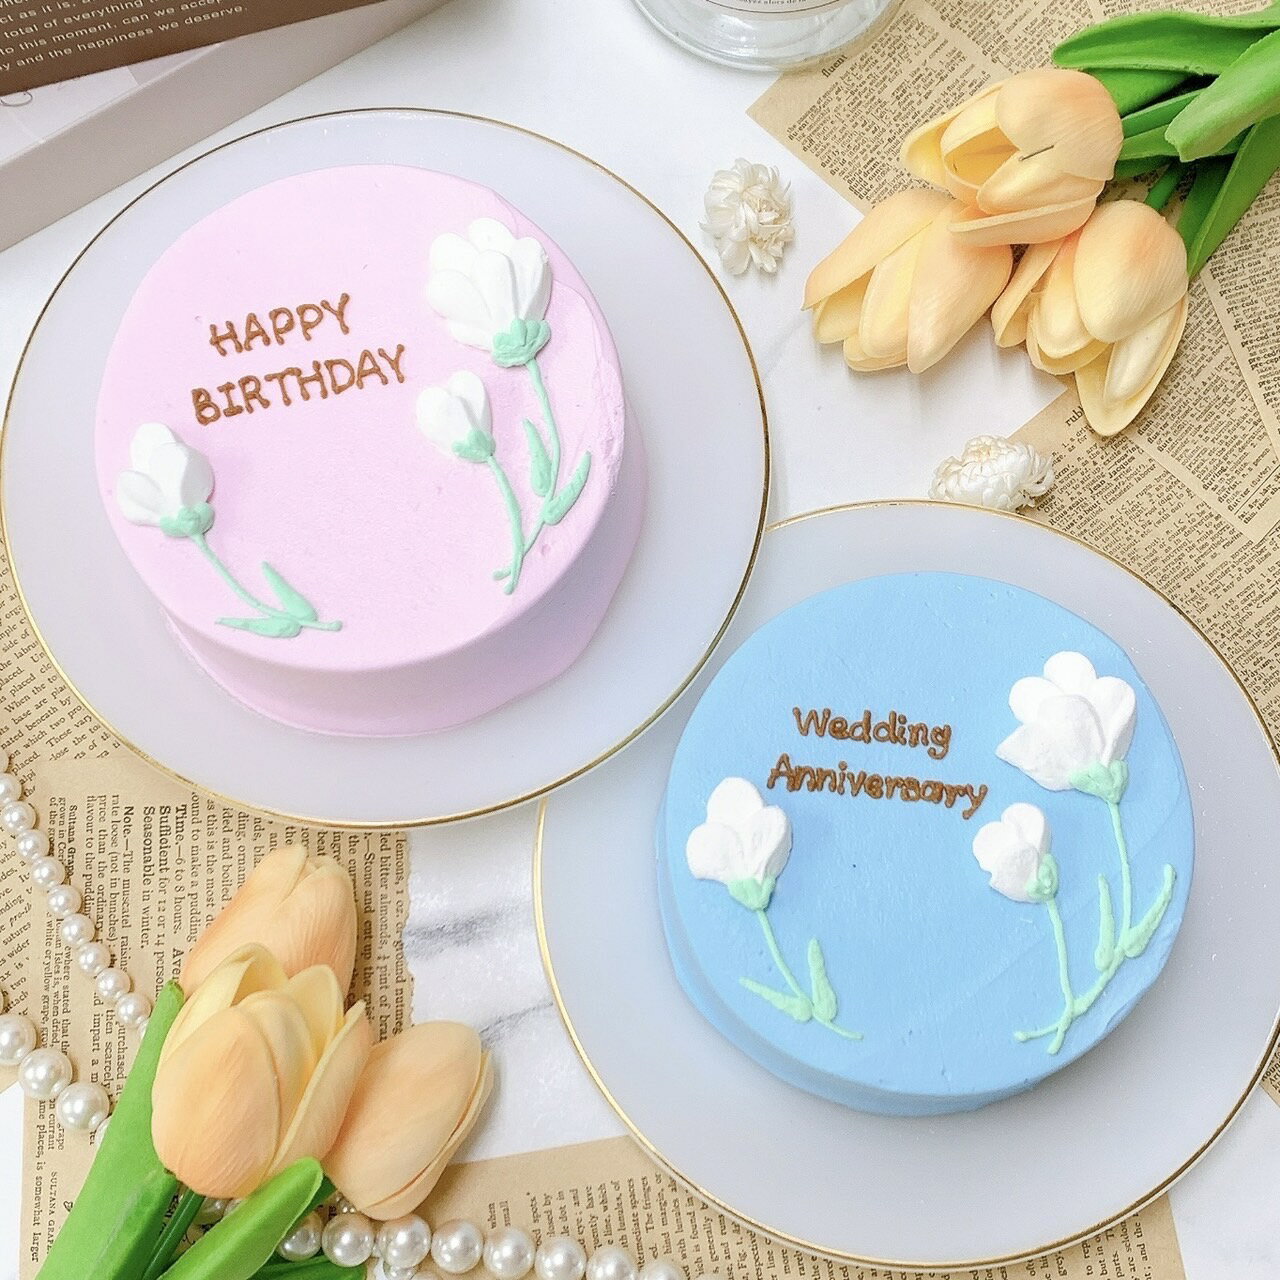 《選べる9色&お好きなメッセージ》3本の白いお花のセンイルケーキ 6号（18m）5～8名様向け 誕生日ケーキ 夏 おしゃれ お祝い 記念日 インスタ映え 推し活 スイーツ ホールケーキ ケーキ サプライズ ギフト プレゼント 贈り物